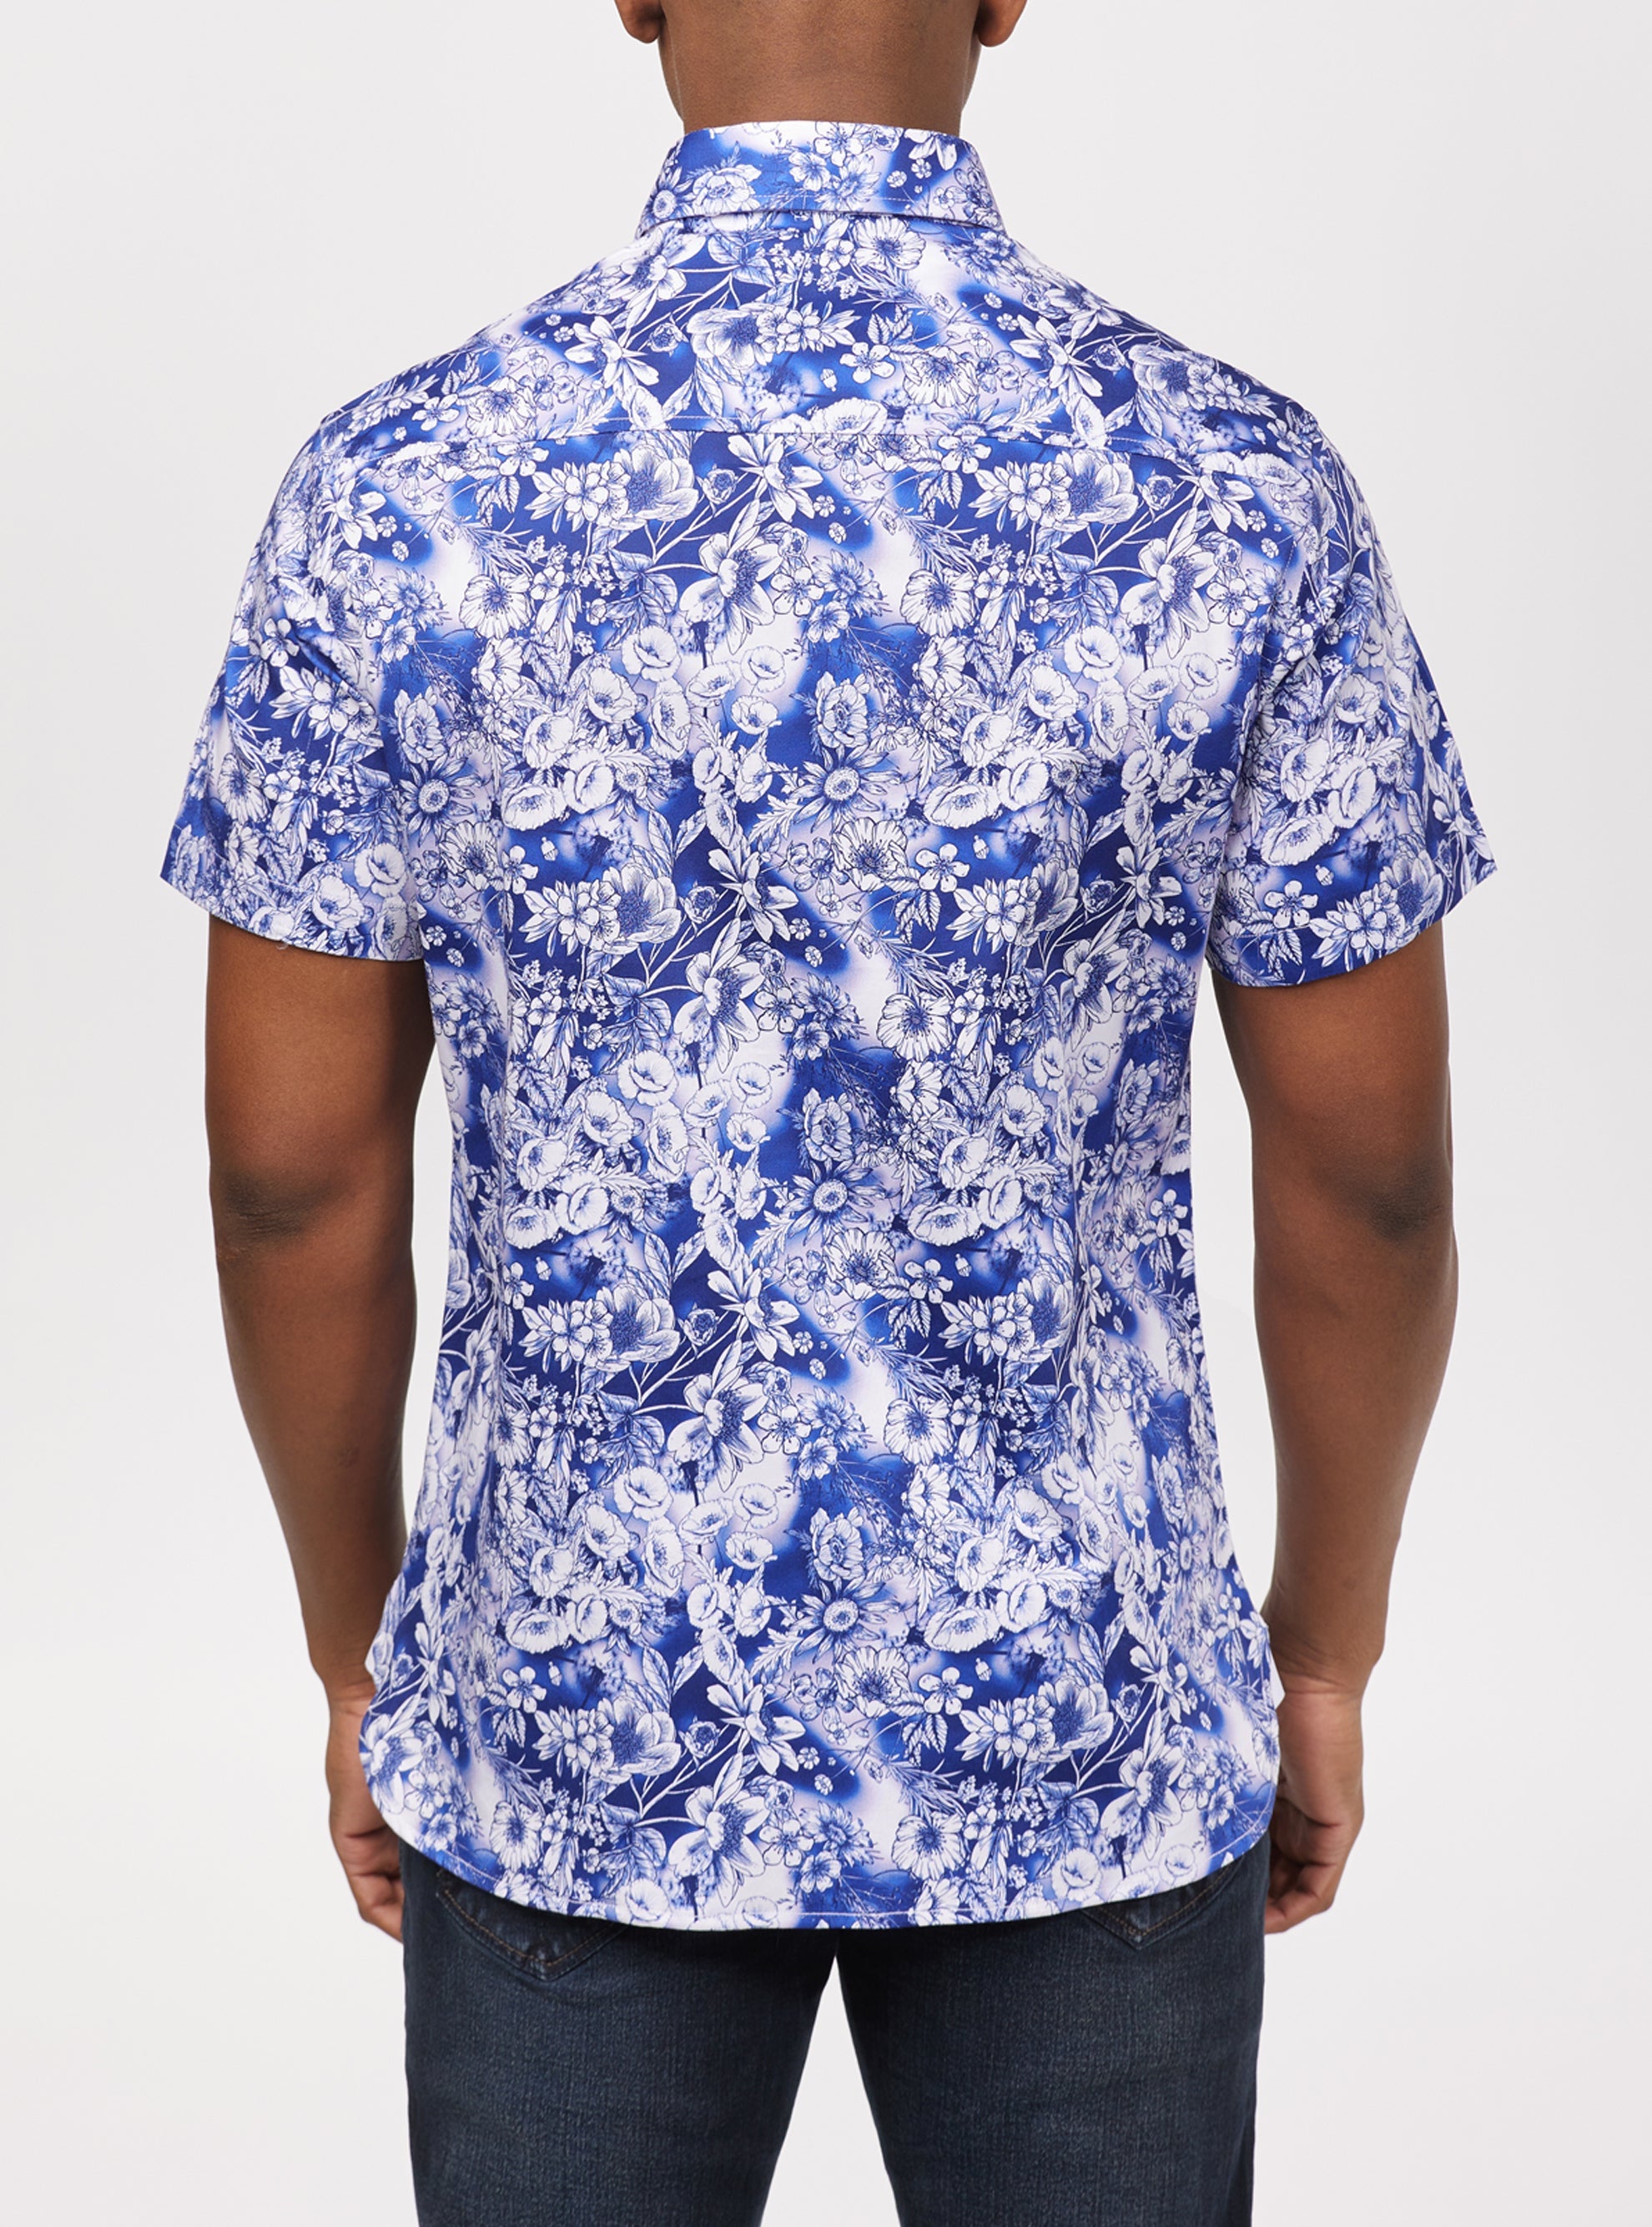 Wildflower print shirt